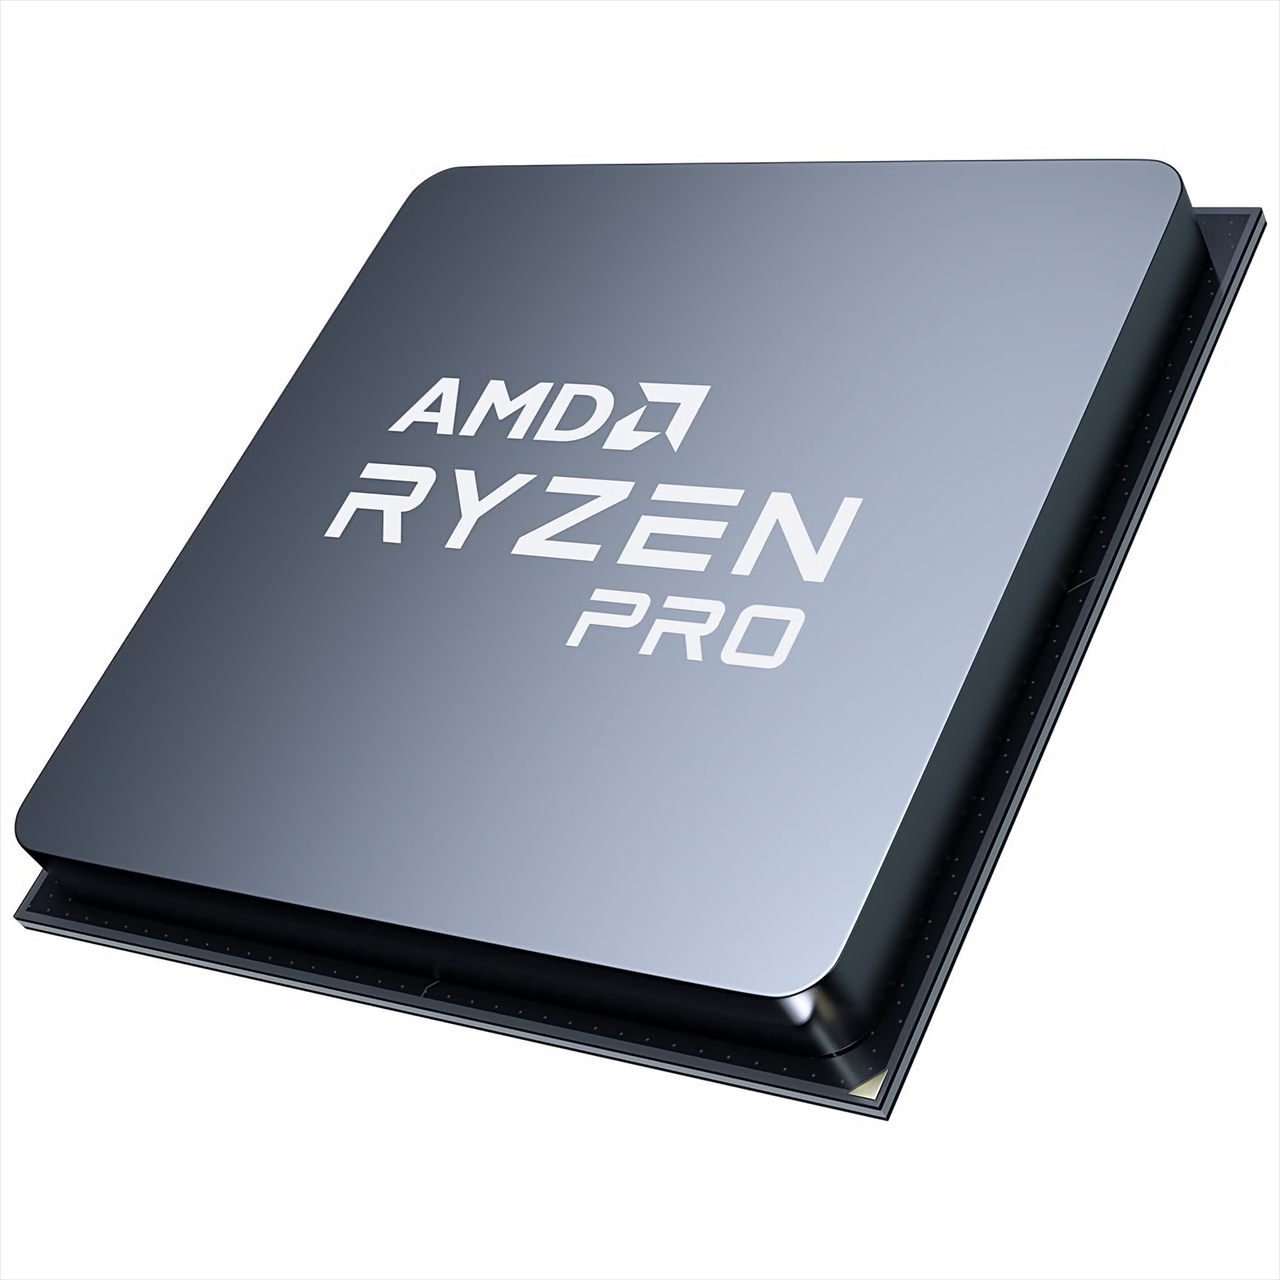 AMD Ryzen 5 Pro 4650G (APU)